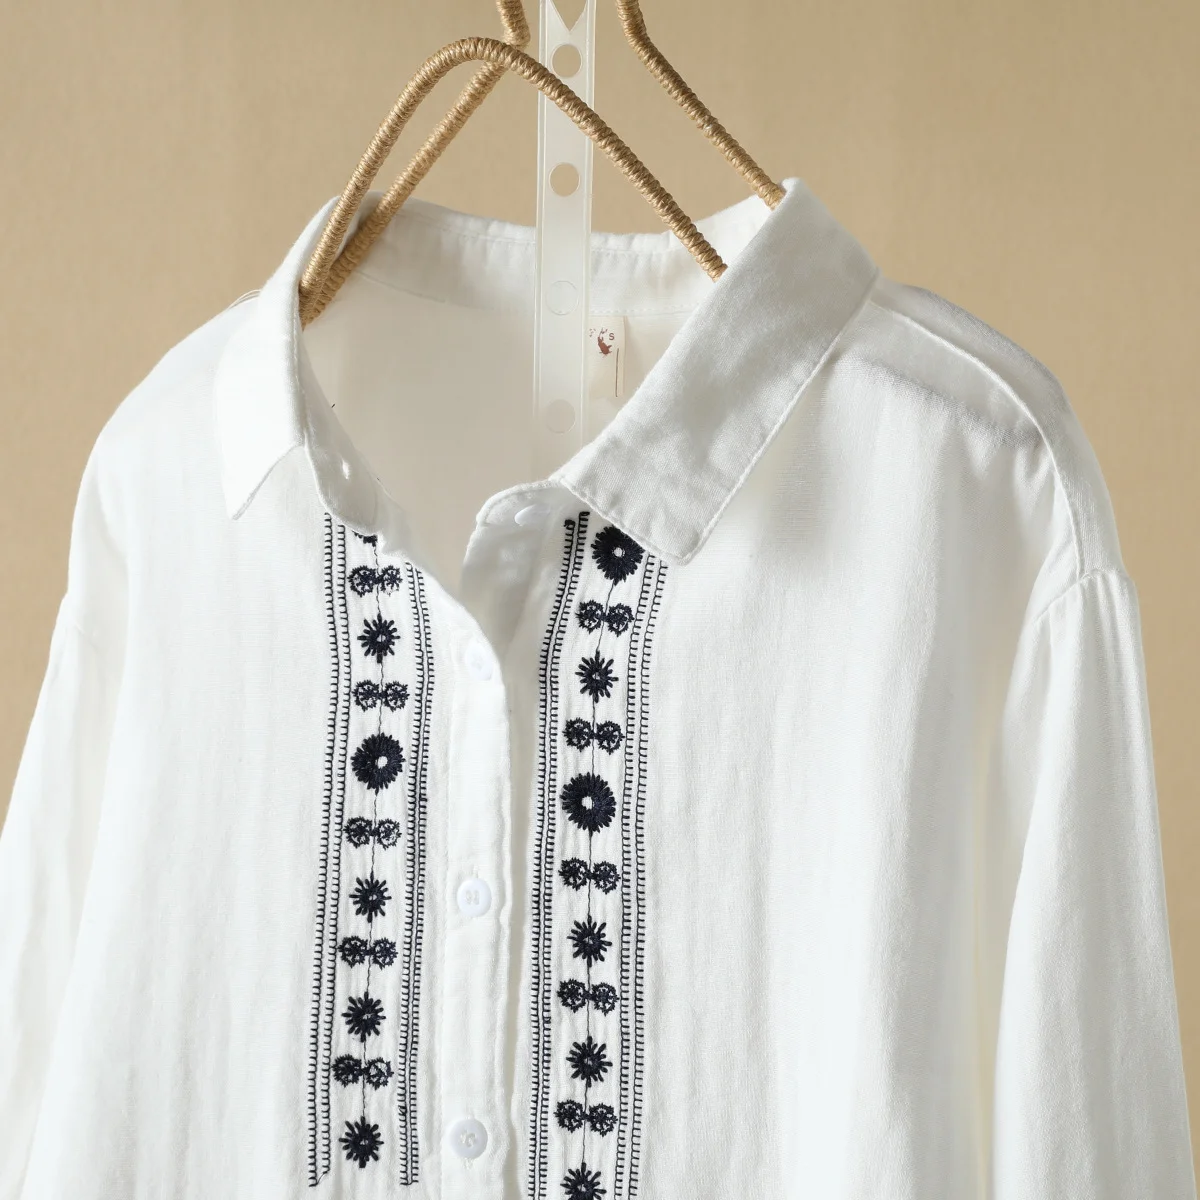 

Топы из 100% хлопка, Этнические блузки в мексиканском стиле, Богемный Хиппи, белые рубашки с длинным рукавом и вышивкой, одежда в стиле бохо